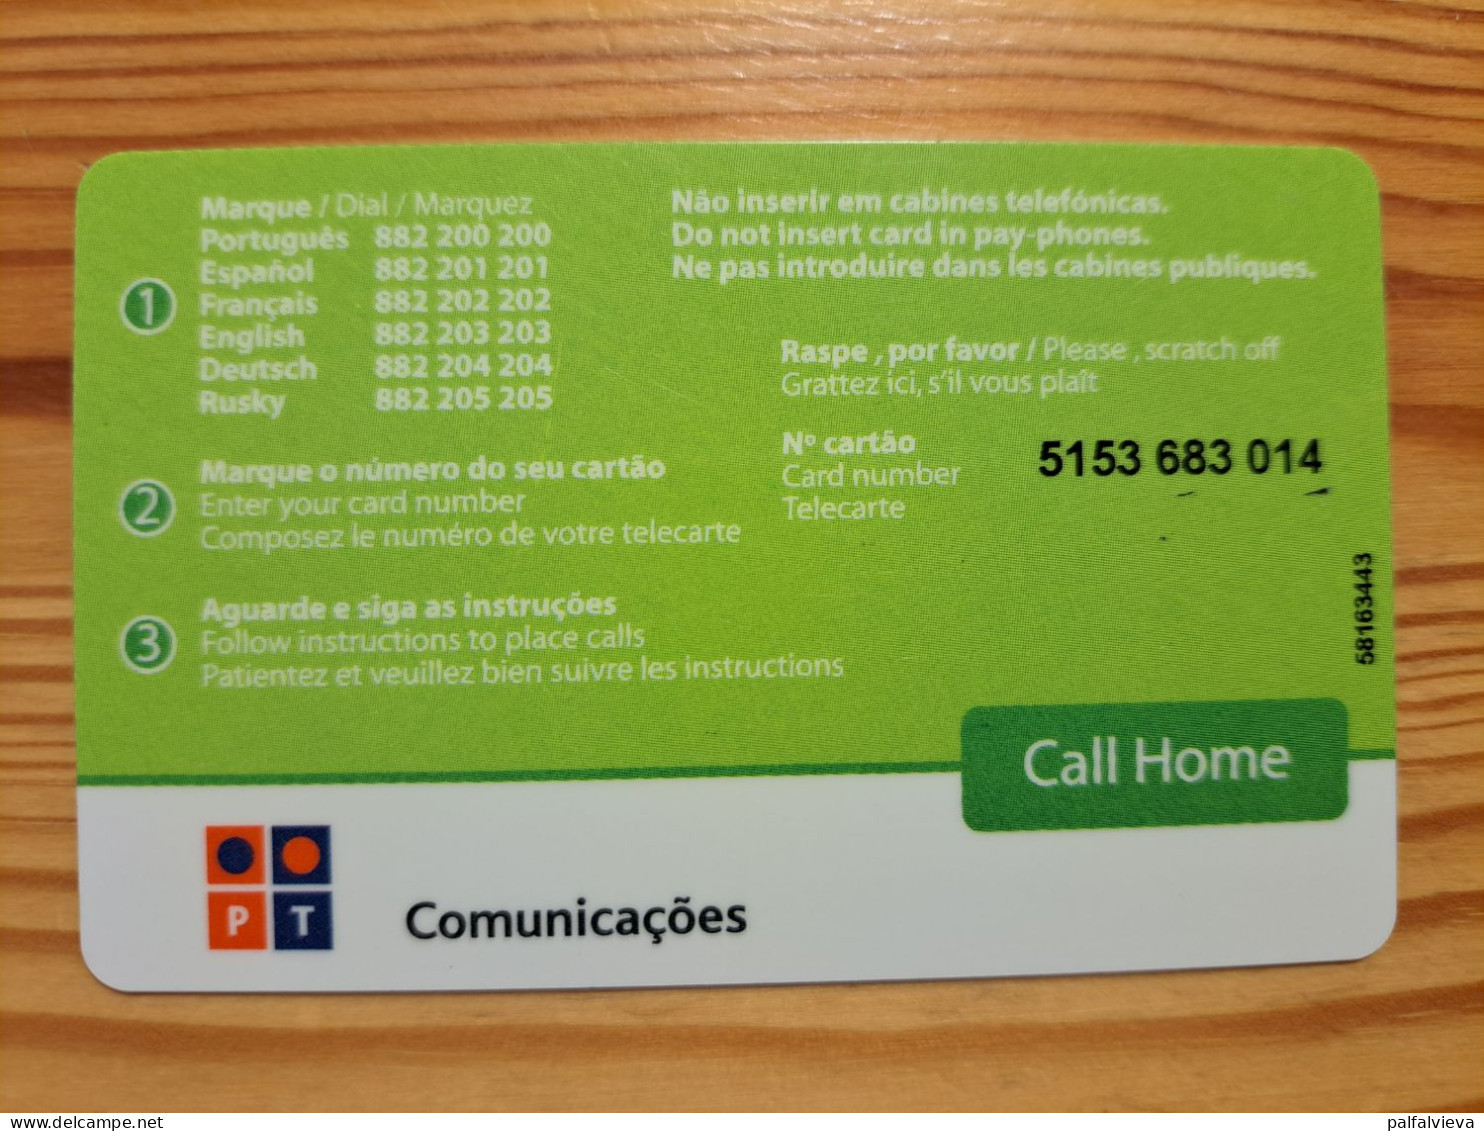 Prepaid Phonecard Portugal, PT, TAP - Portogallo